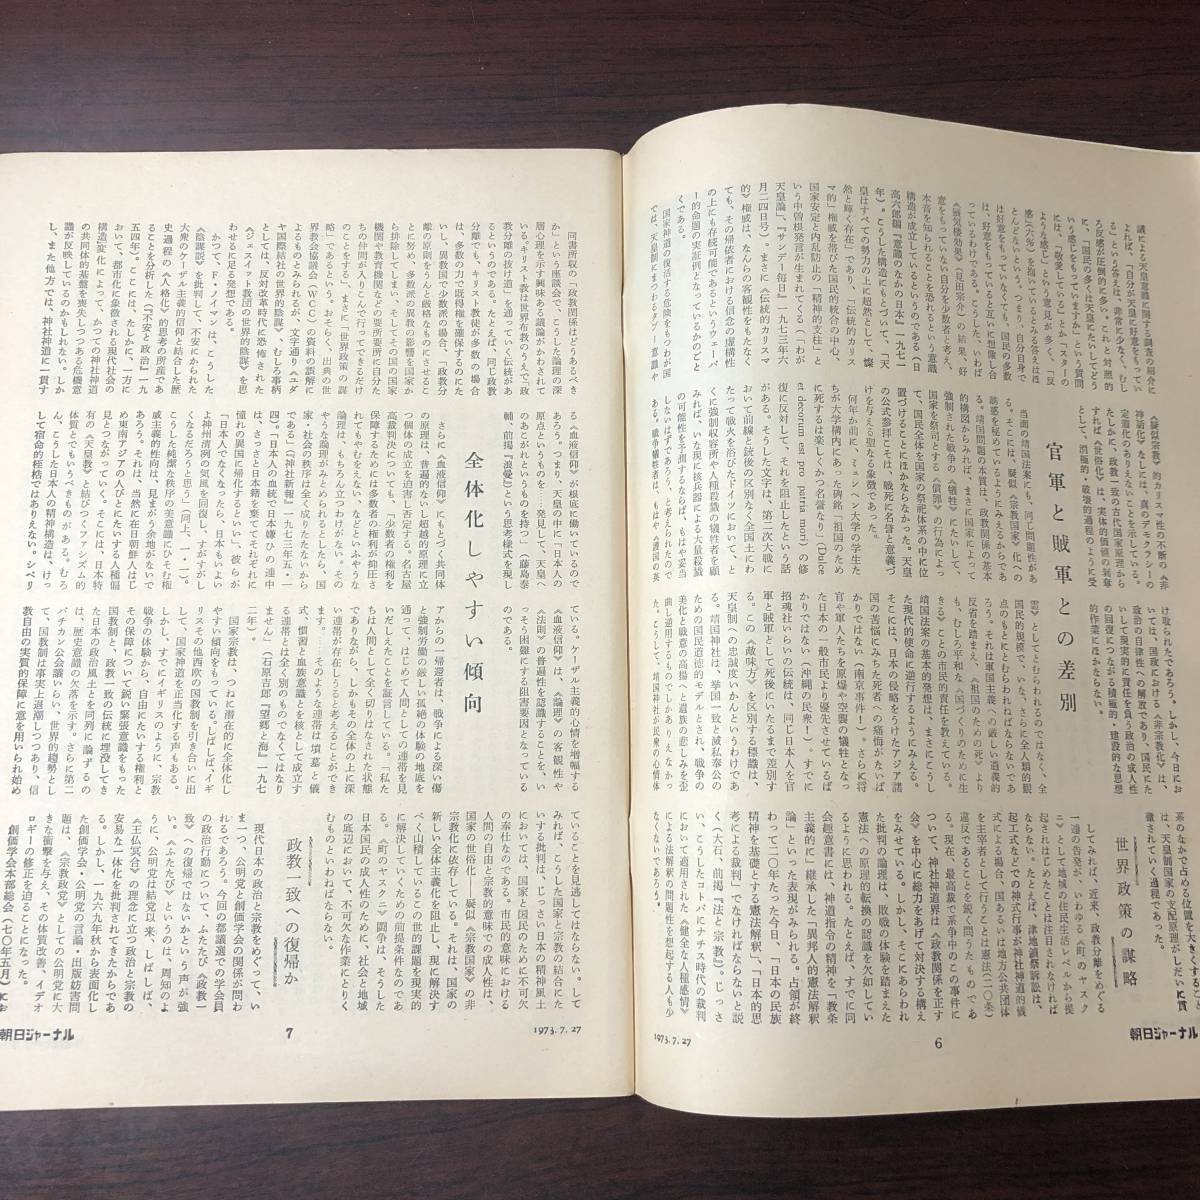 A01【ゆうメール送料無料】朝日ジャーナル 1973年7月27日号 VOL.15 NO.29の画像4